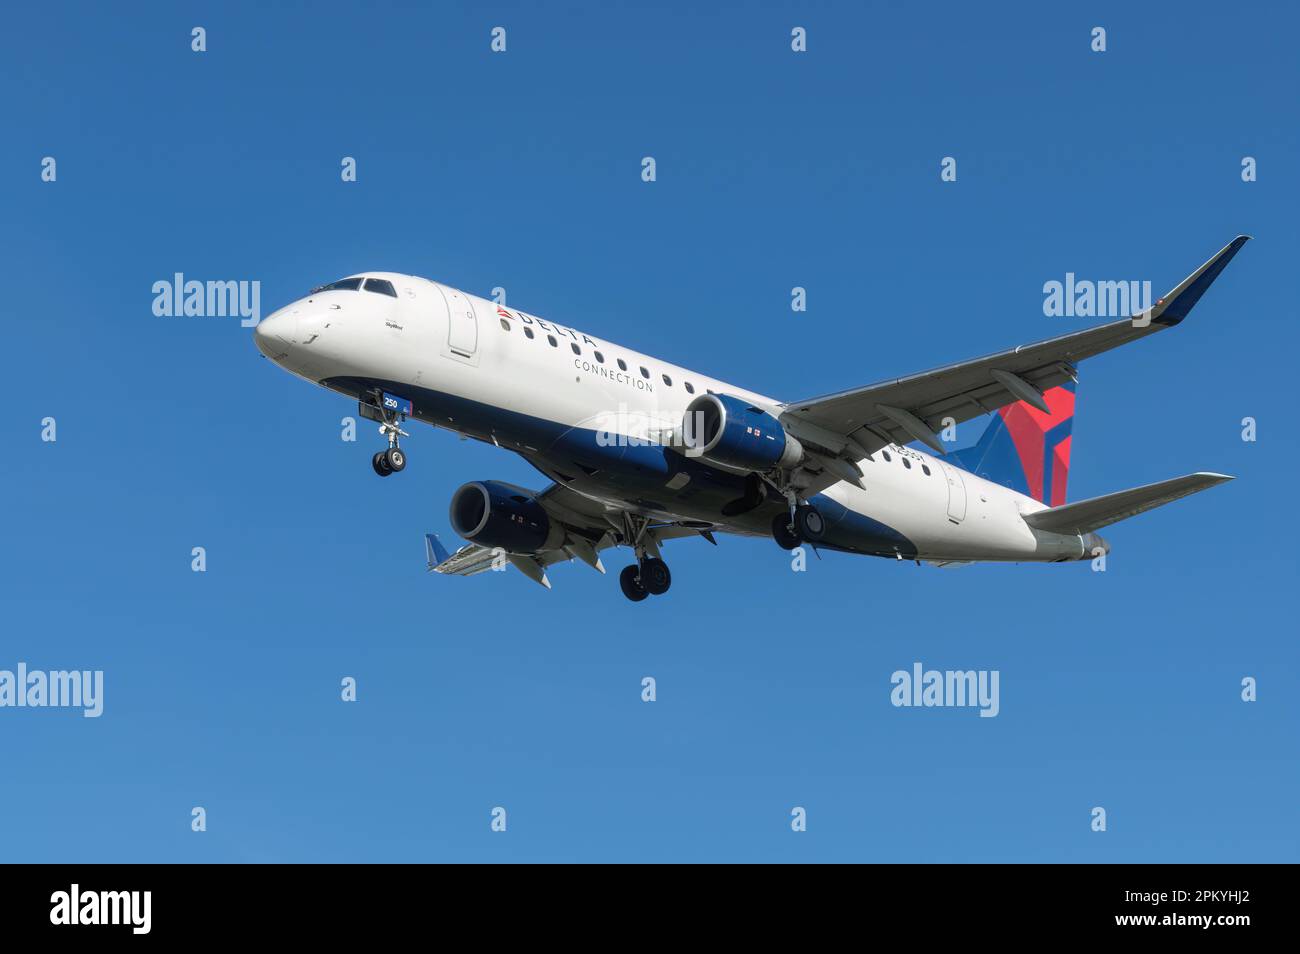 Delta Air Lines Embraer ERJ-170 mit der Registrierung N250SY wird kurz vor der Landung am Flughafen Hollywood Burbank gezeigt. Stockfoto